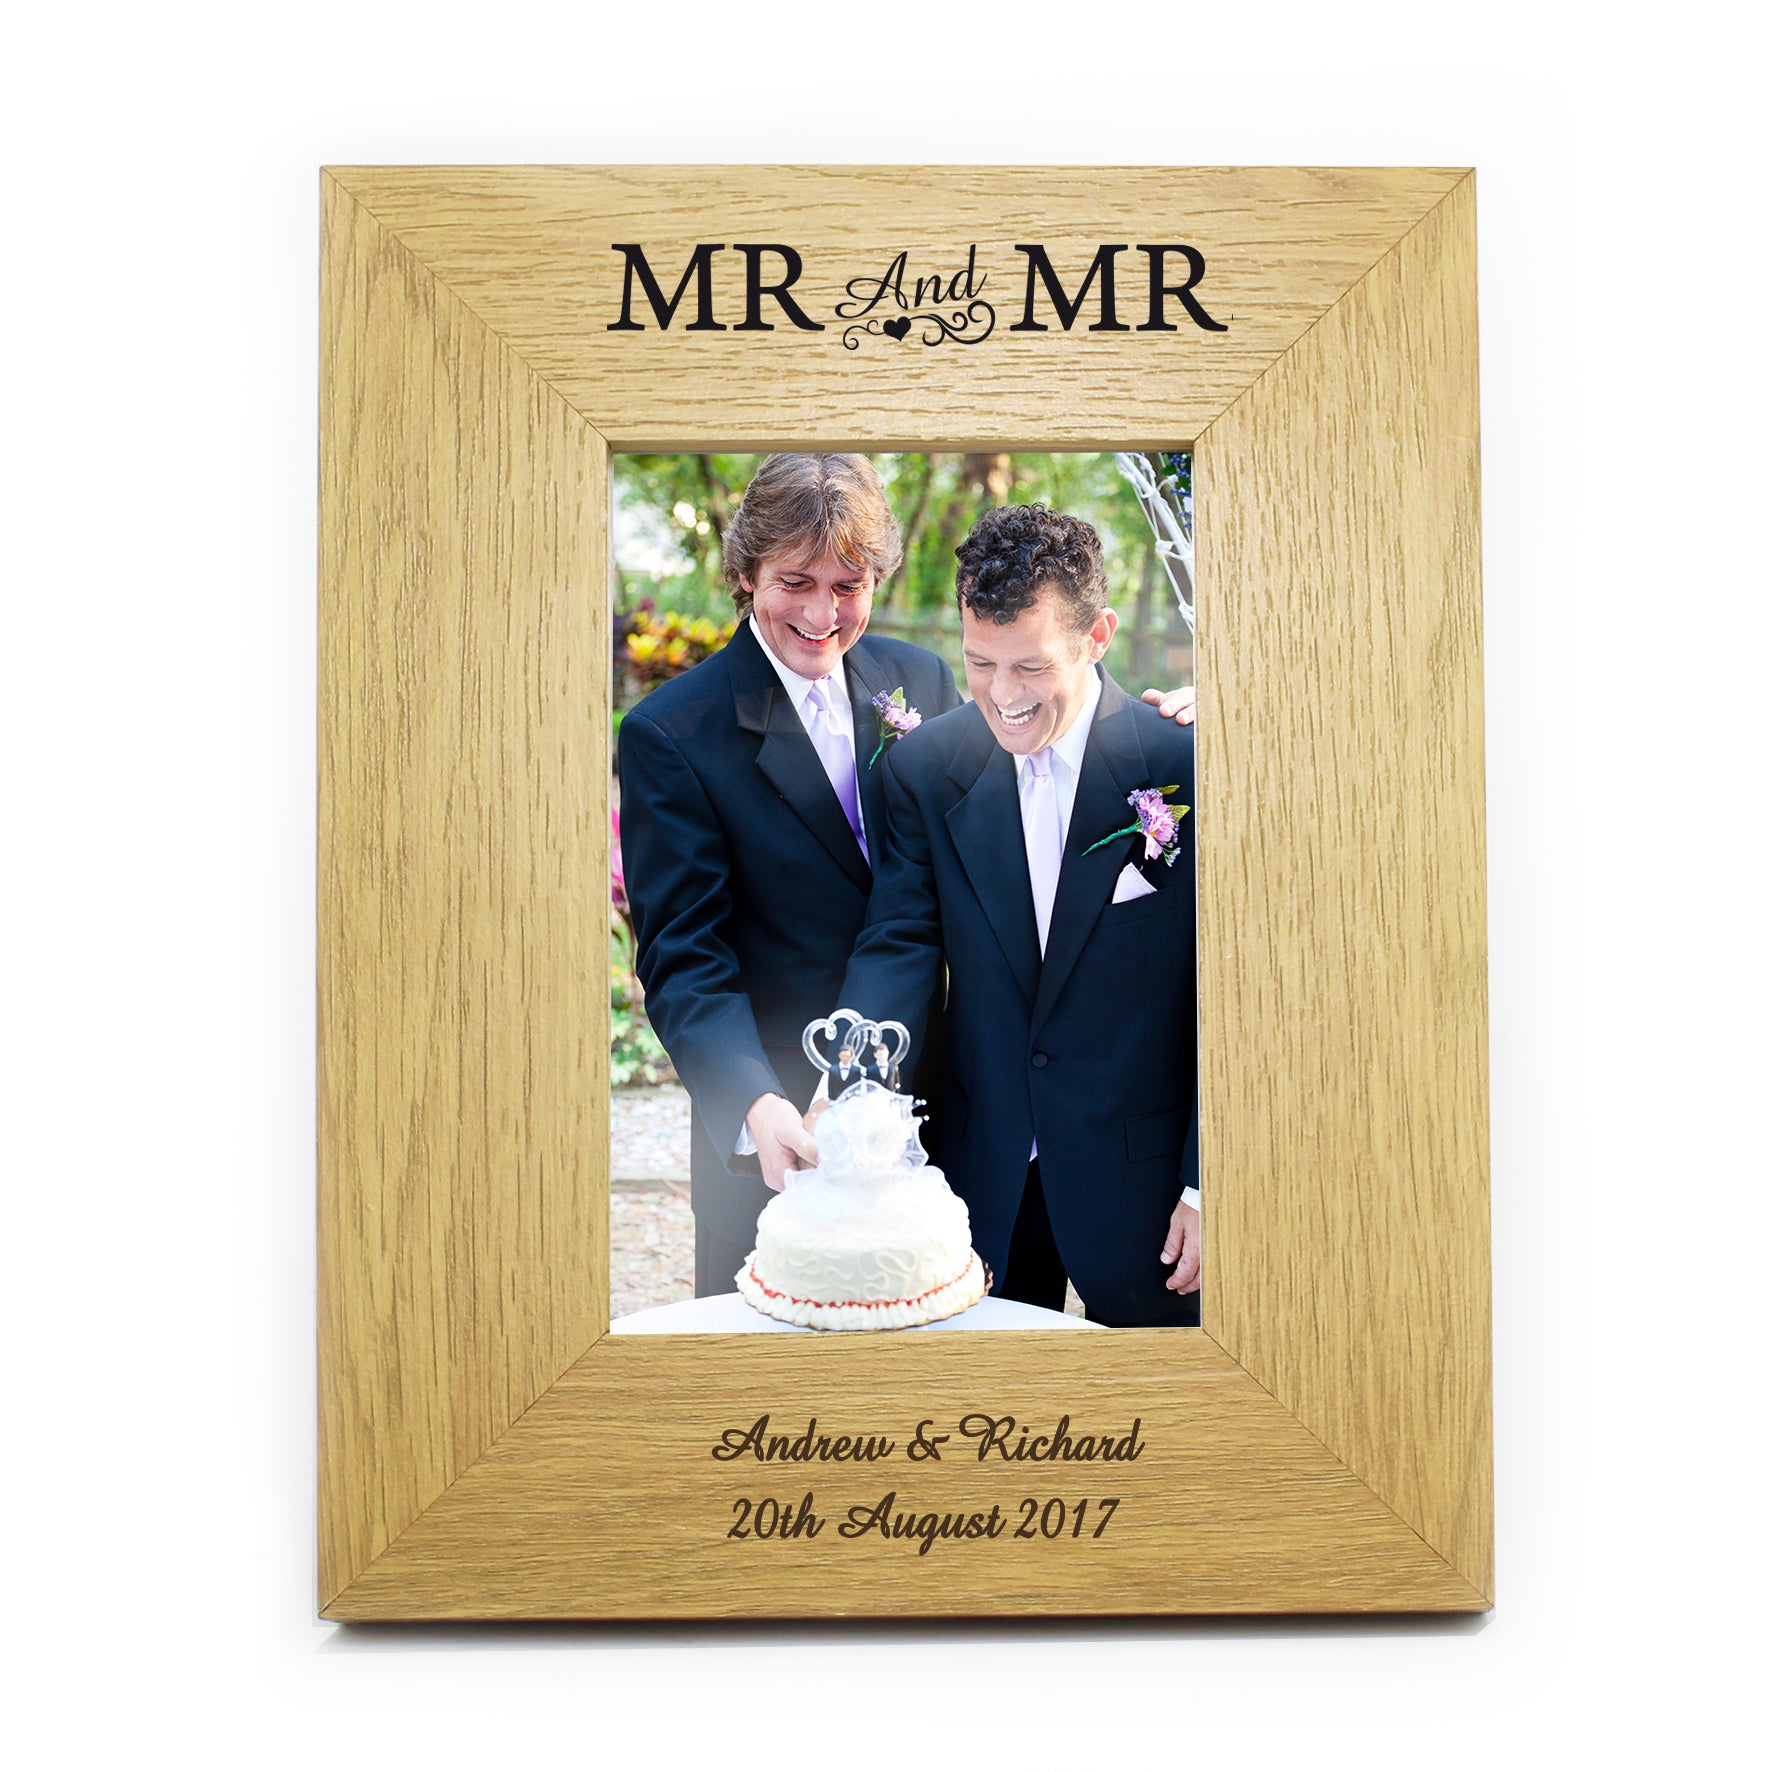 Personalised Oak Finish 4x6 Mr & Mr Photo Frame